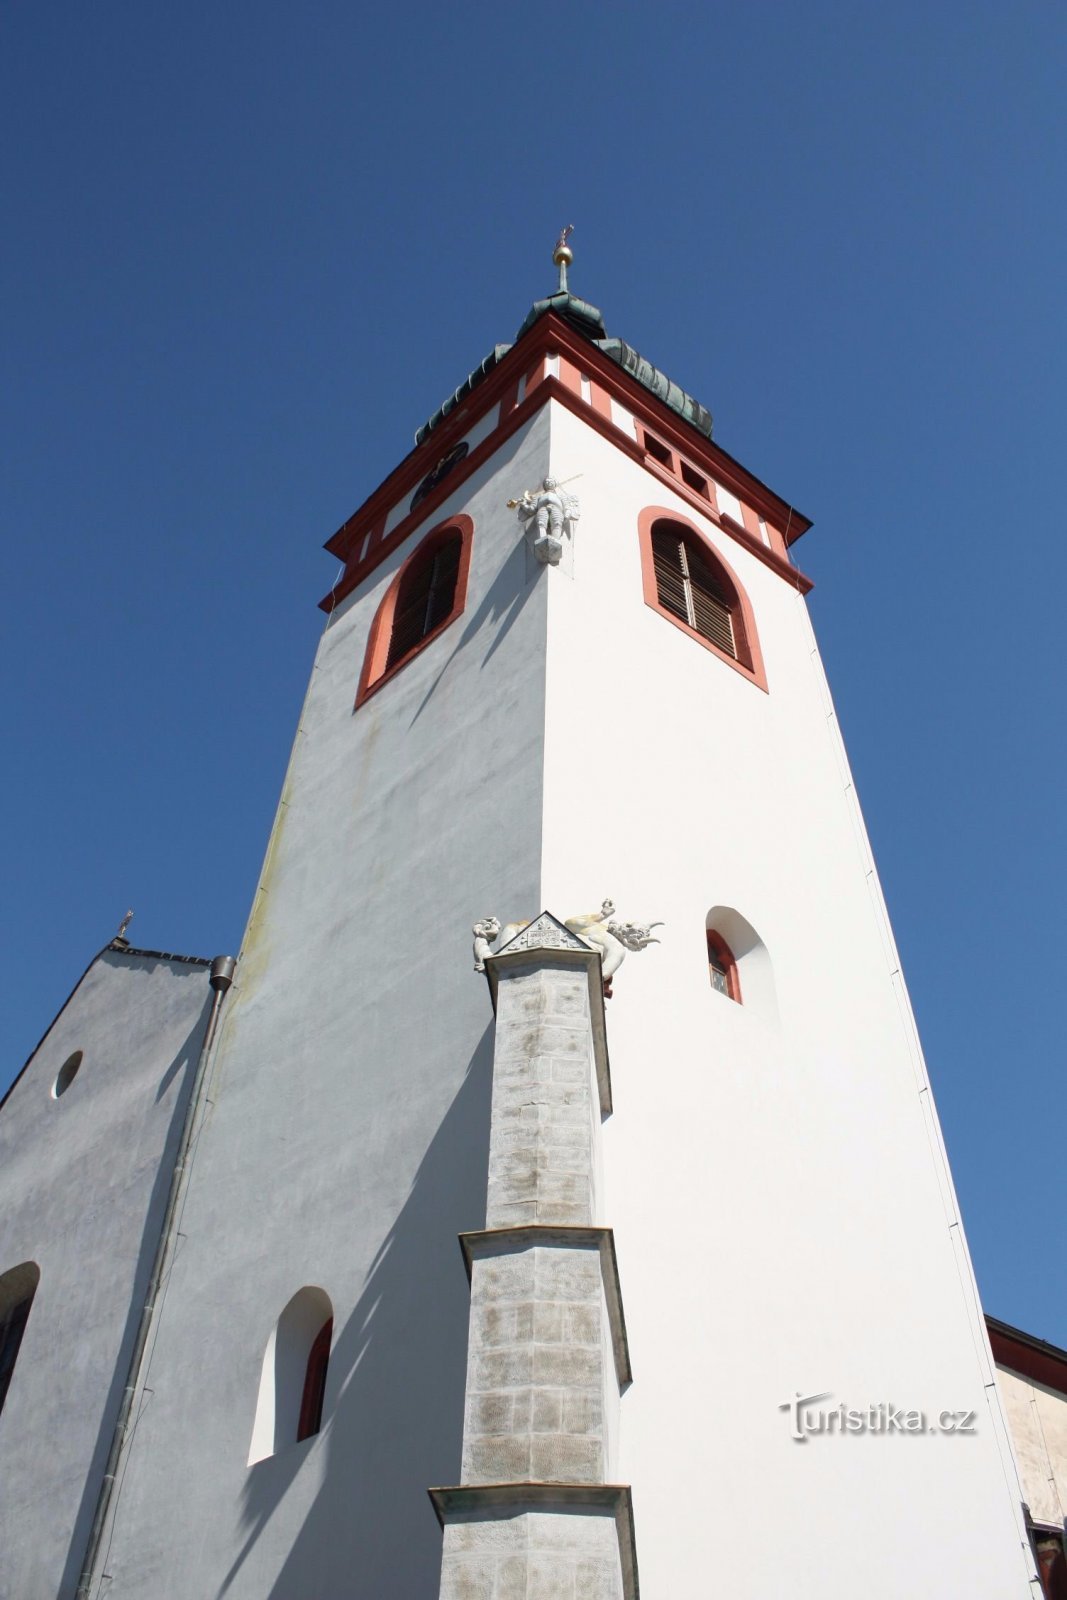 Basiliek van St. Wenceslas in Stará Boleslav